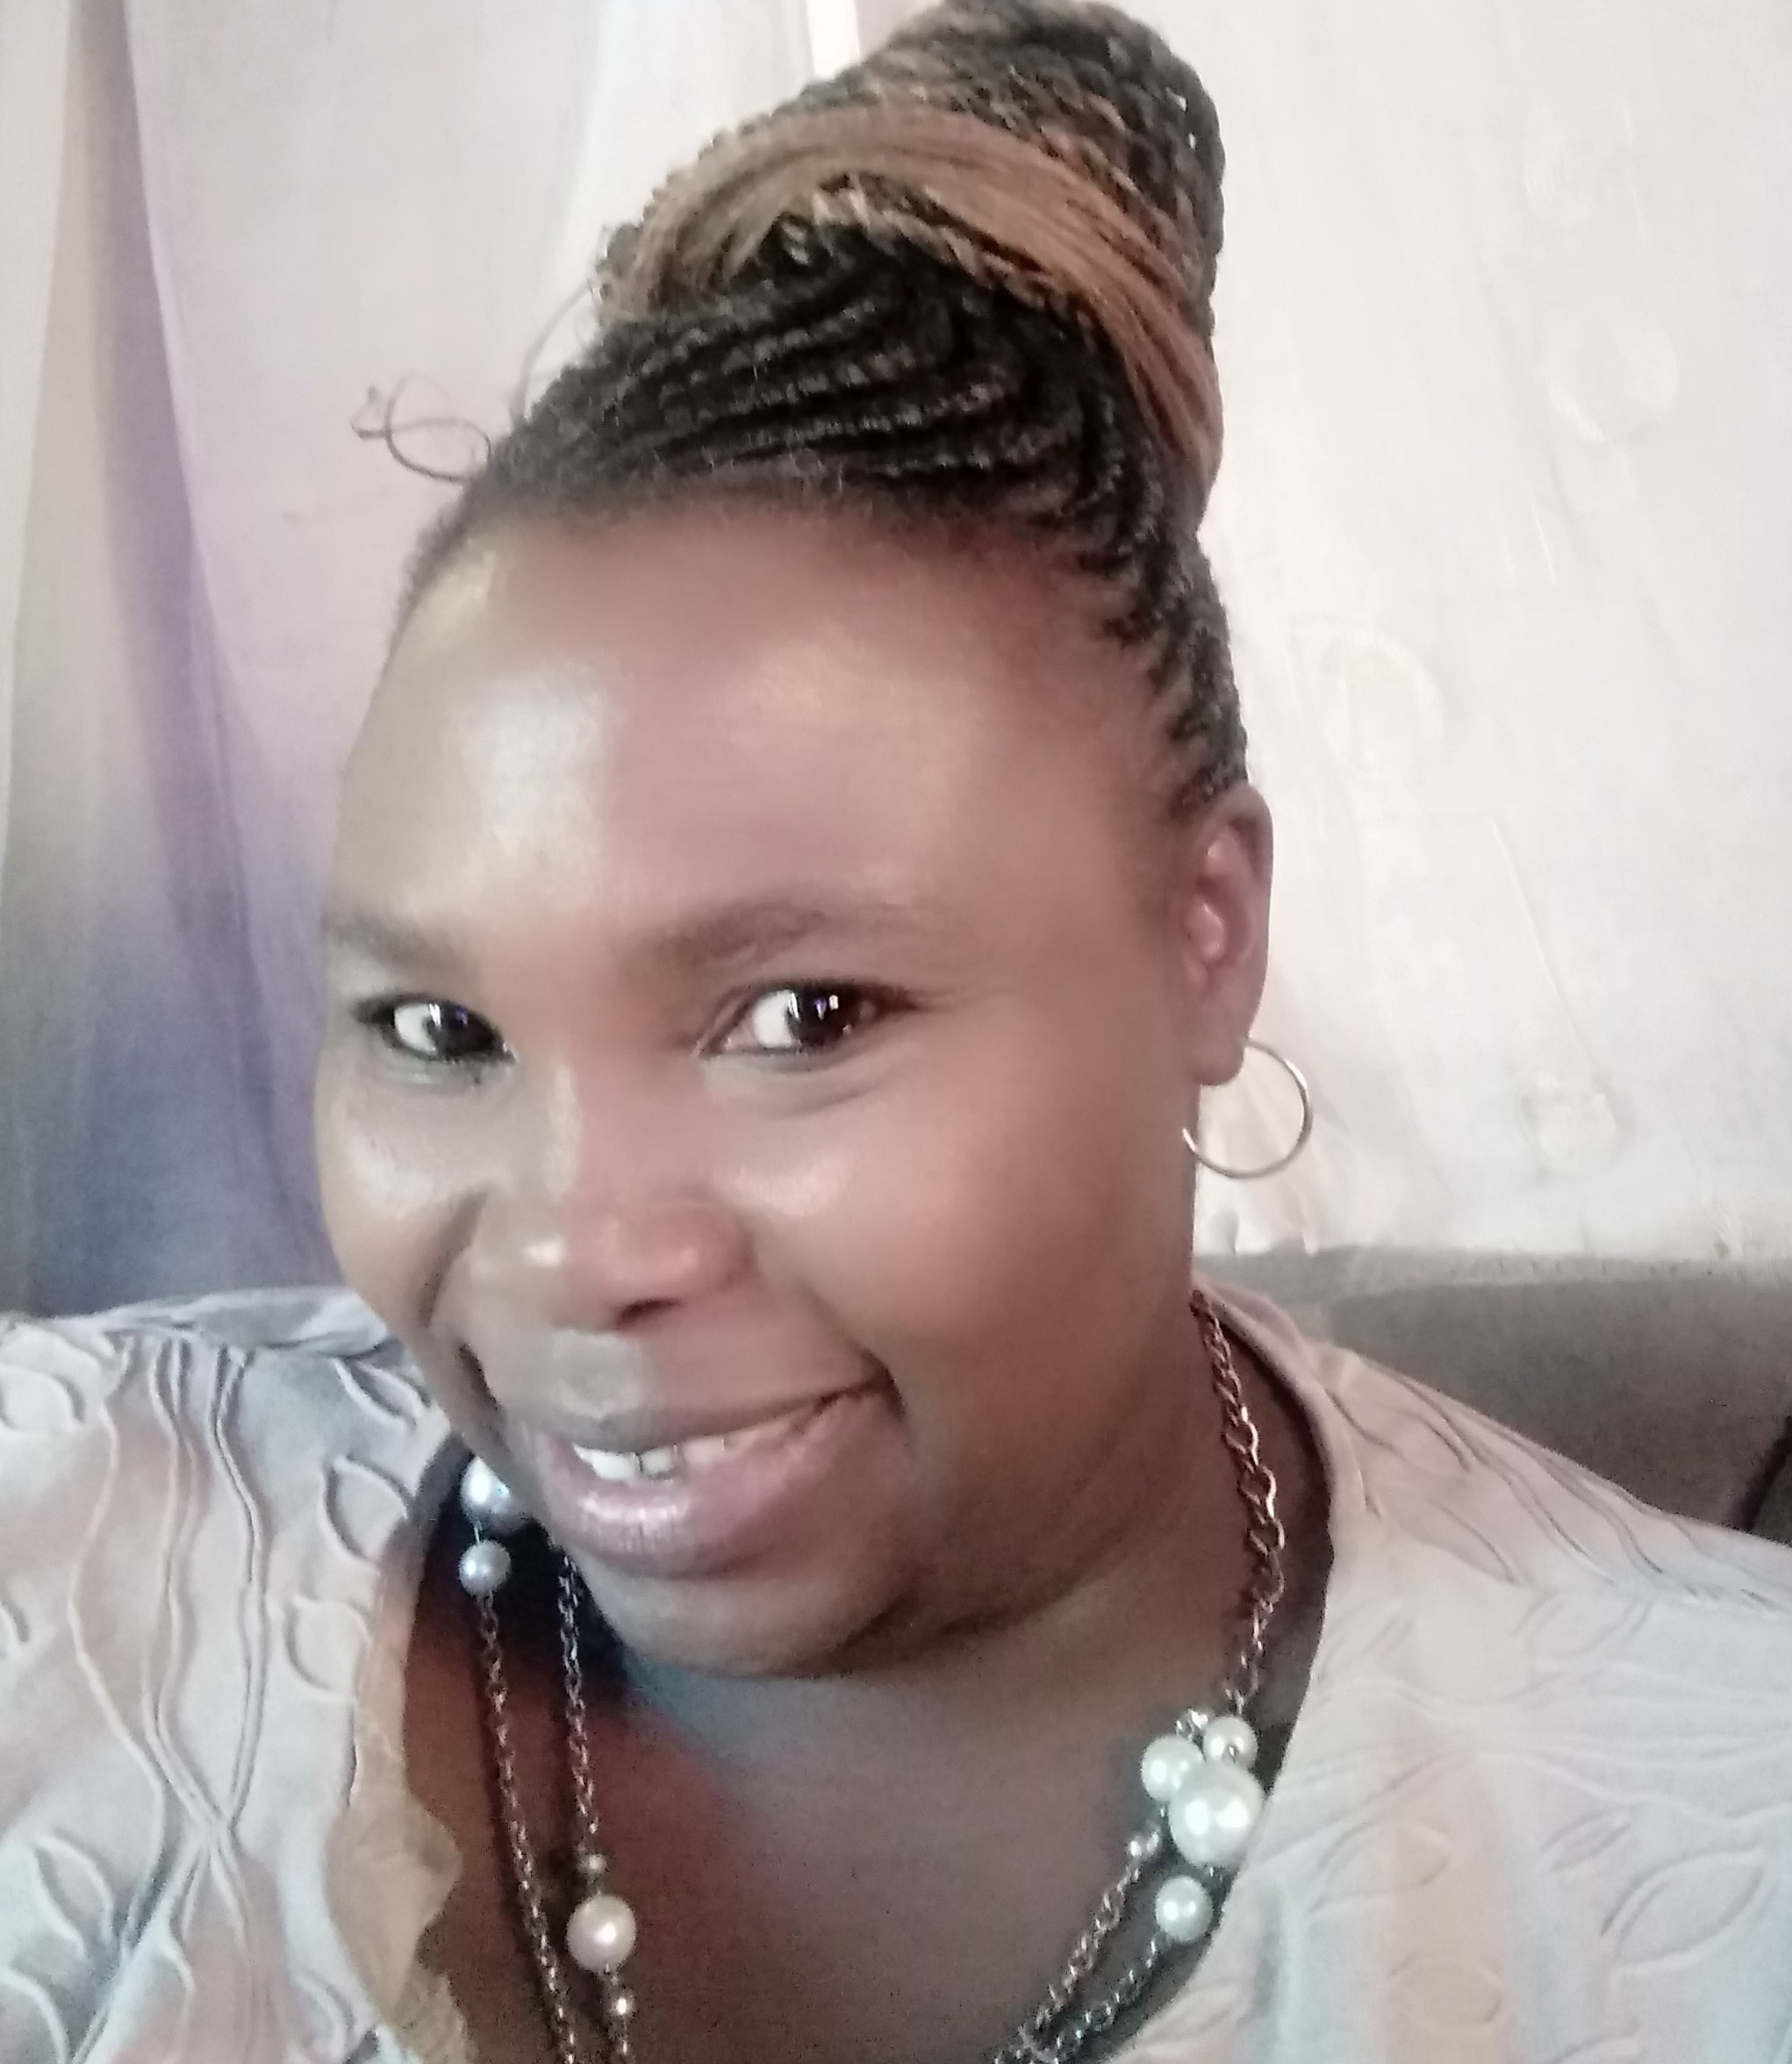 Ms Contilia Hlamalani Bayi